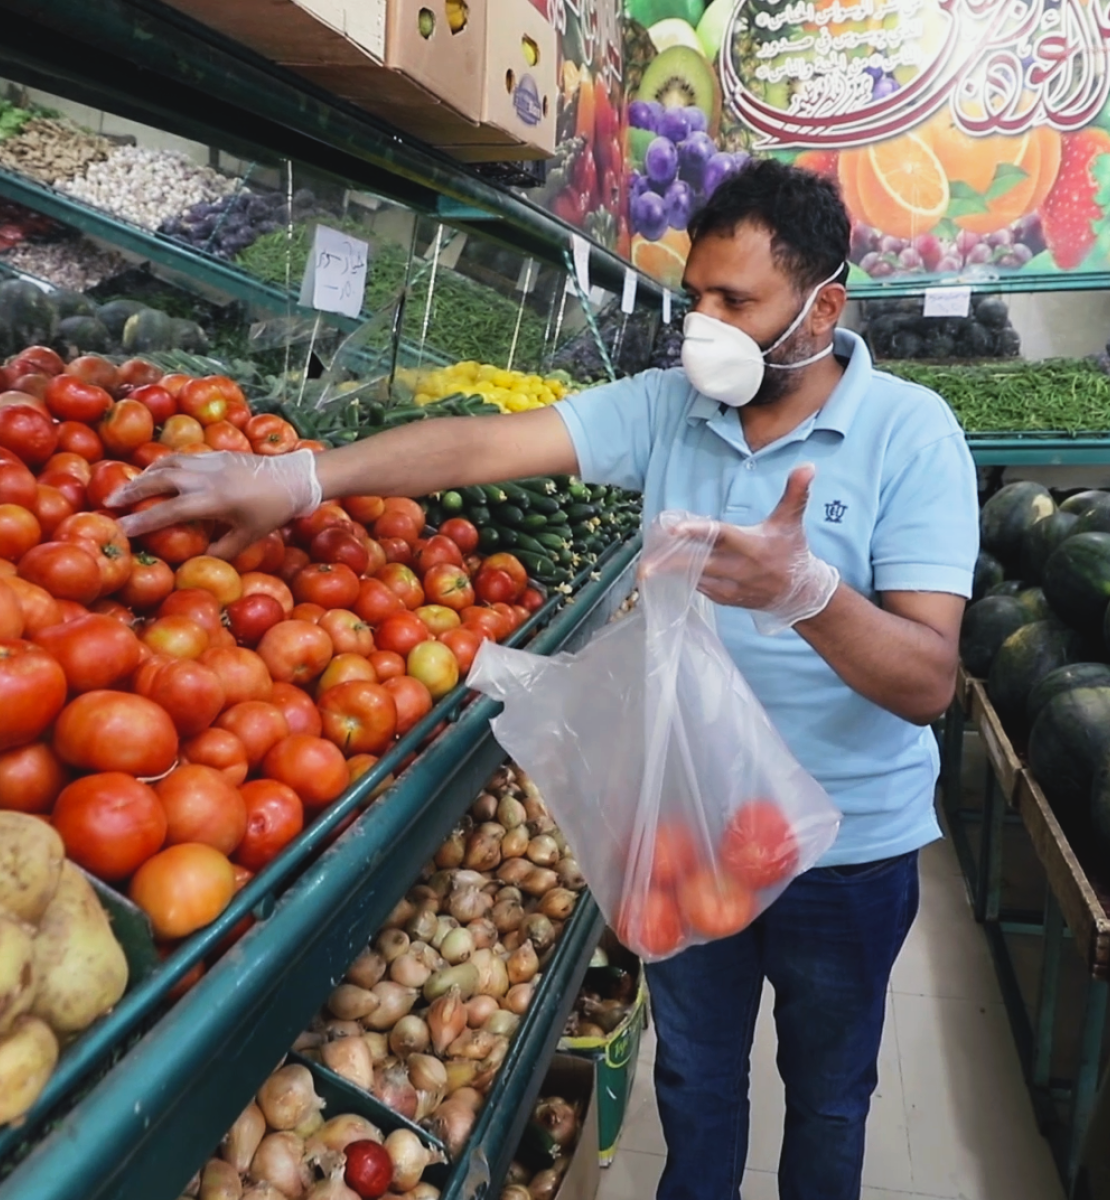 Abdou, un refugiado yemení en Ammán, hace mercado en una frutería tras la reapertura de pequeñas empresas. Lleva una mascarilla protectora y guantes. En primer plano de la imagen, un niño, también con mascarilla, lo ve meter tomates en una bolsa de plástico.